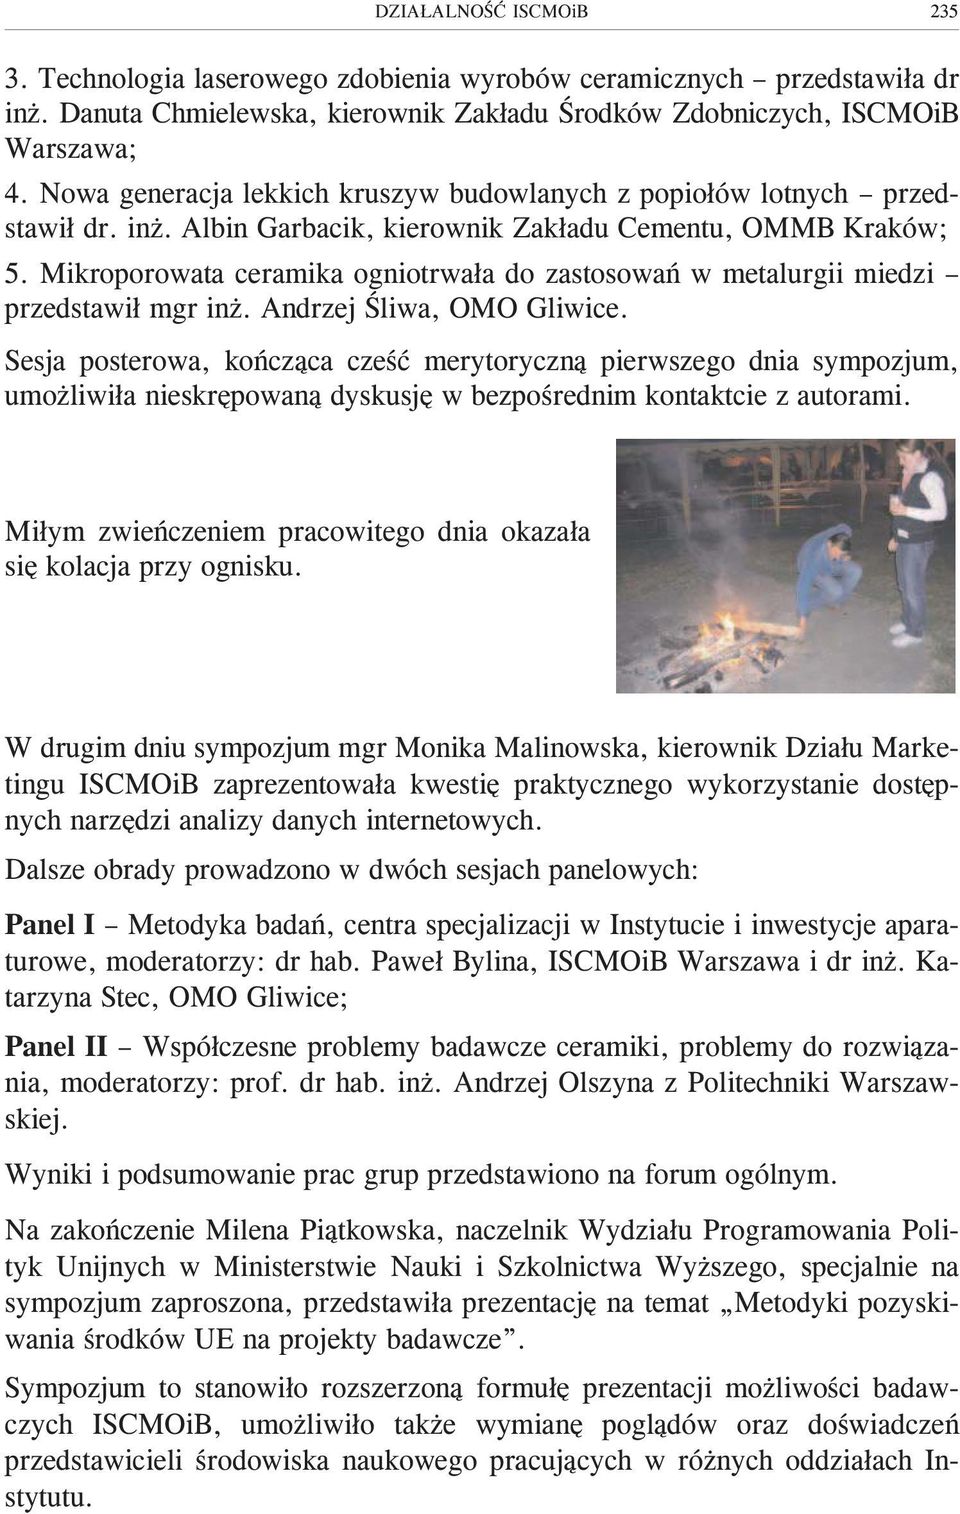 Mikroporowata ceramika ogniotrwa³a do zastosowañ w metalurgii miedzi przedstawi³ mgr in. Andrzej Œliwa, OMO Gliwice.